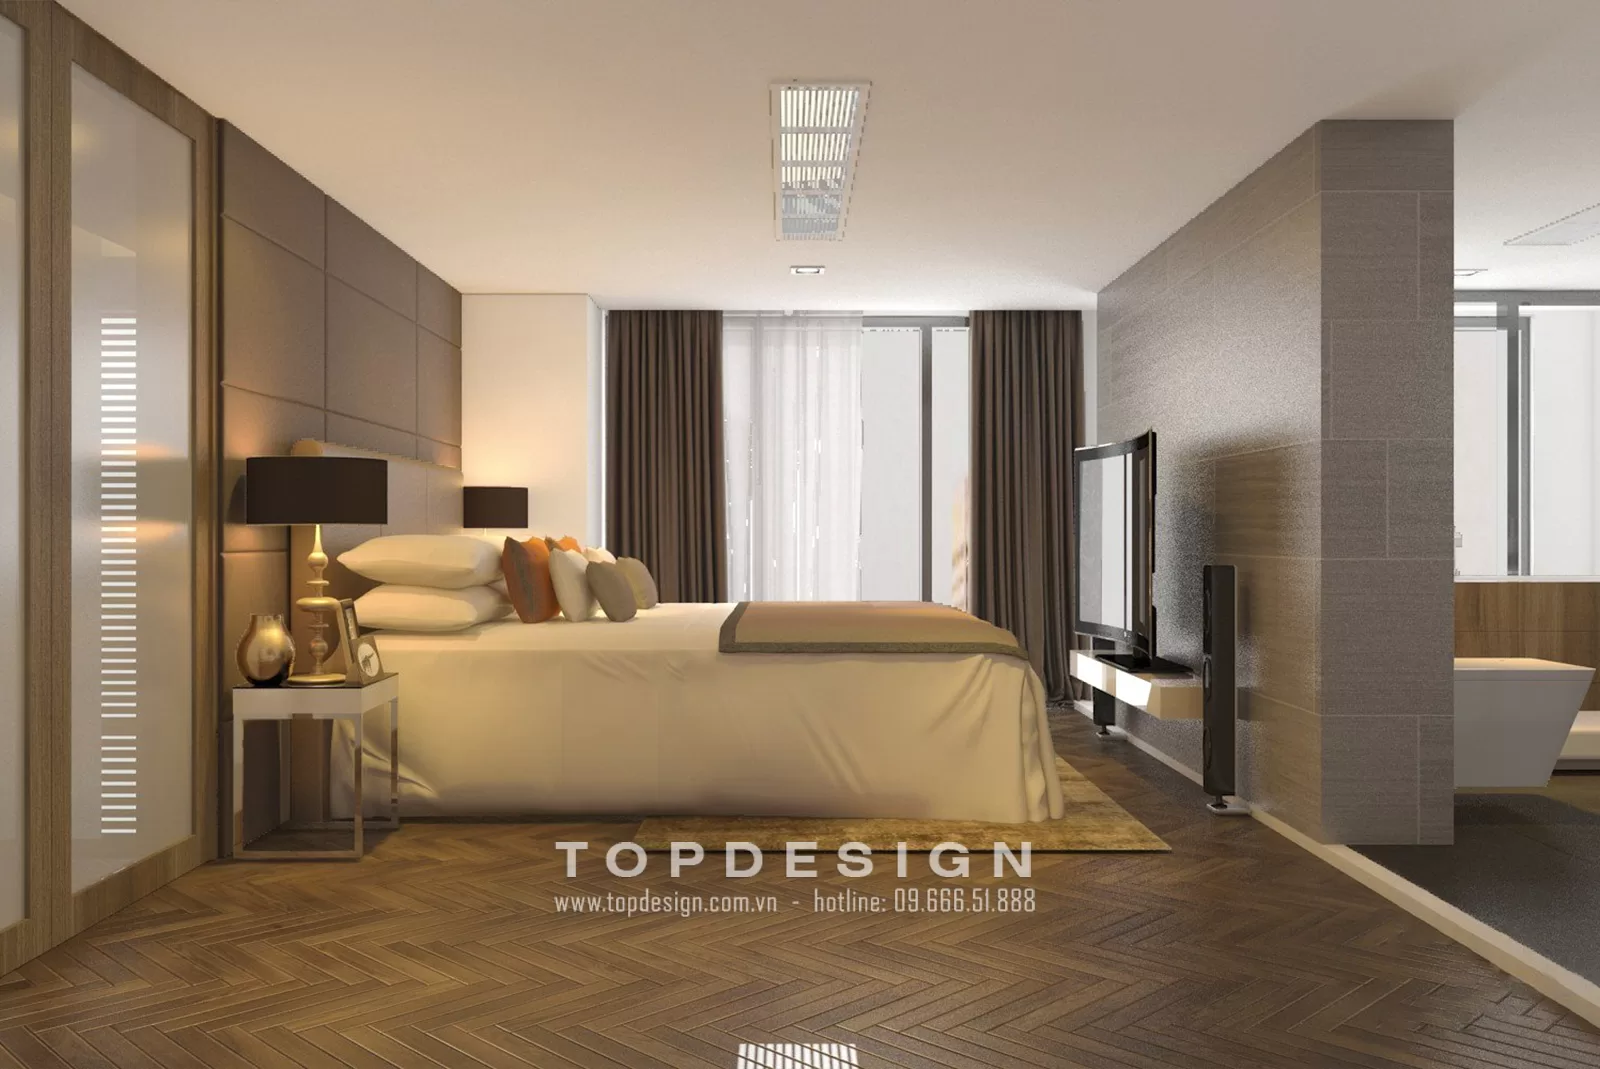 Thiết kế nội thất nhà phố hiện đại - Topdesign 04